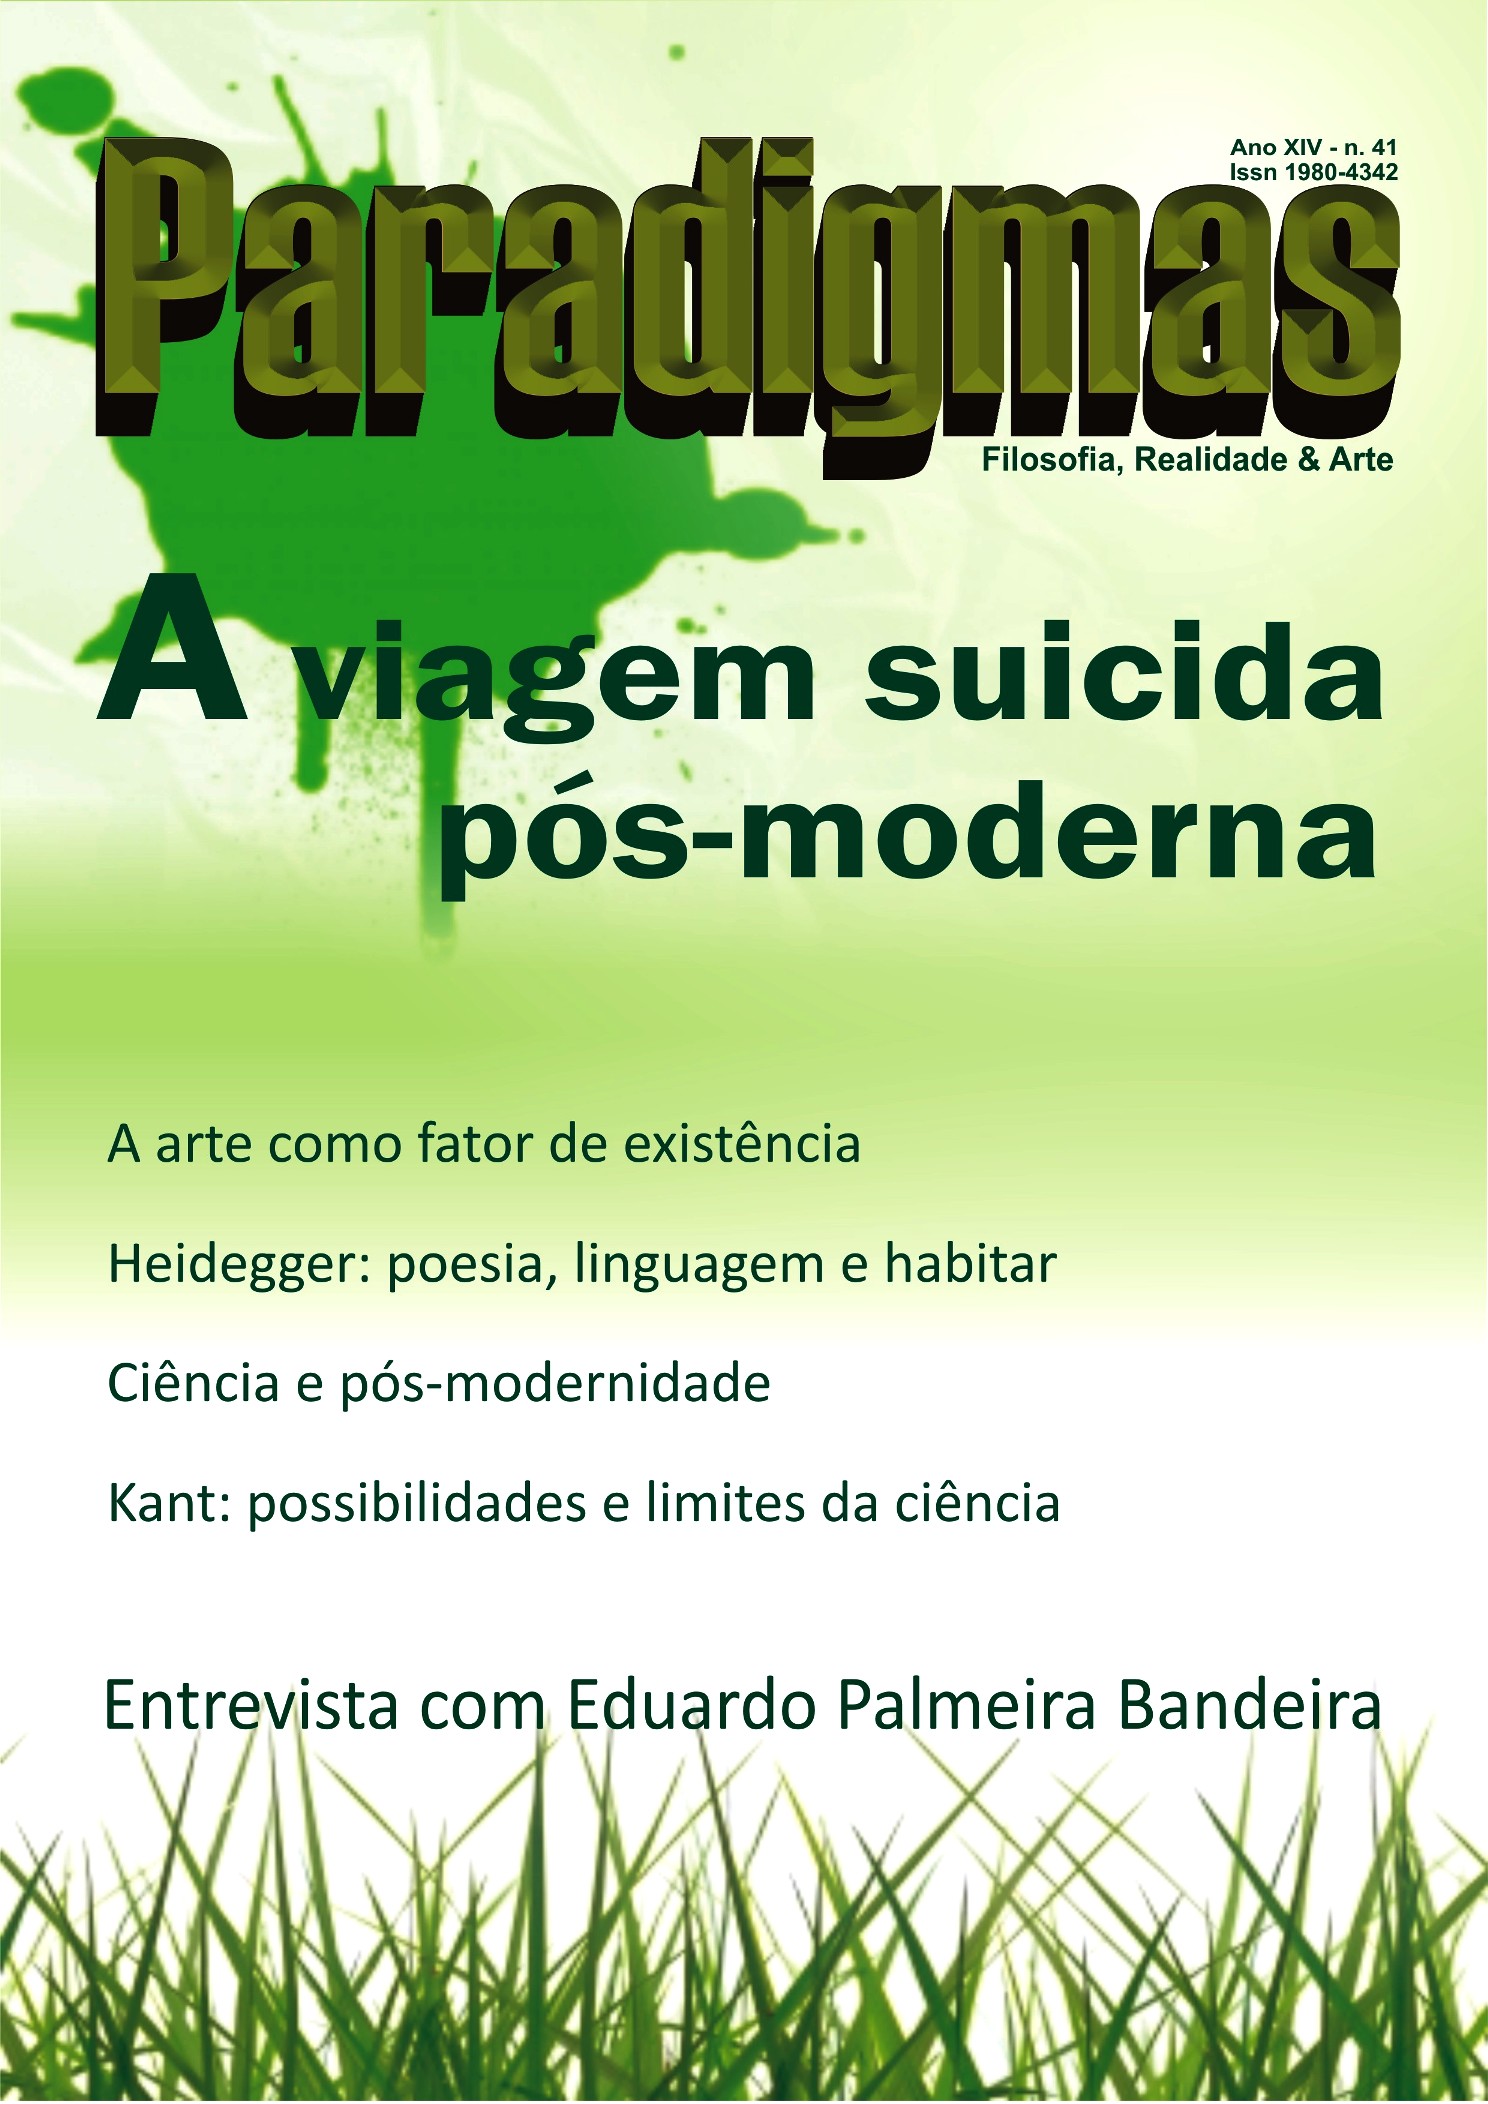 Revista Paradigmas - Edição 41